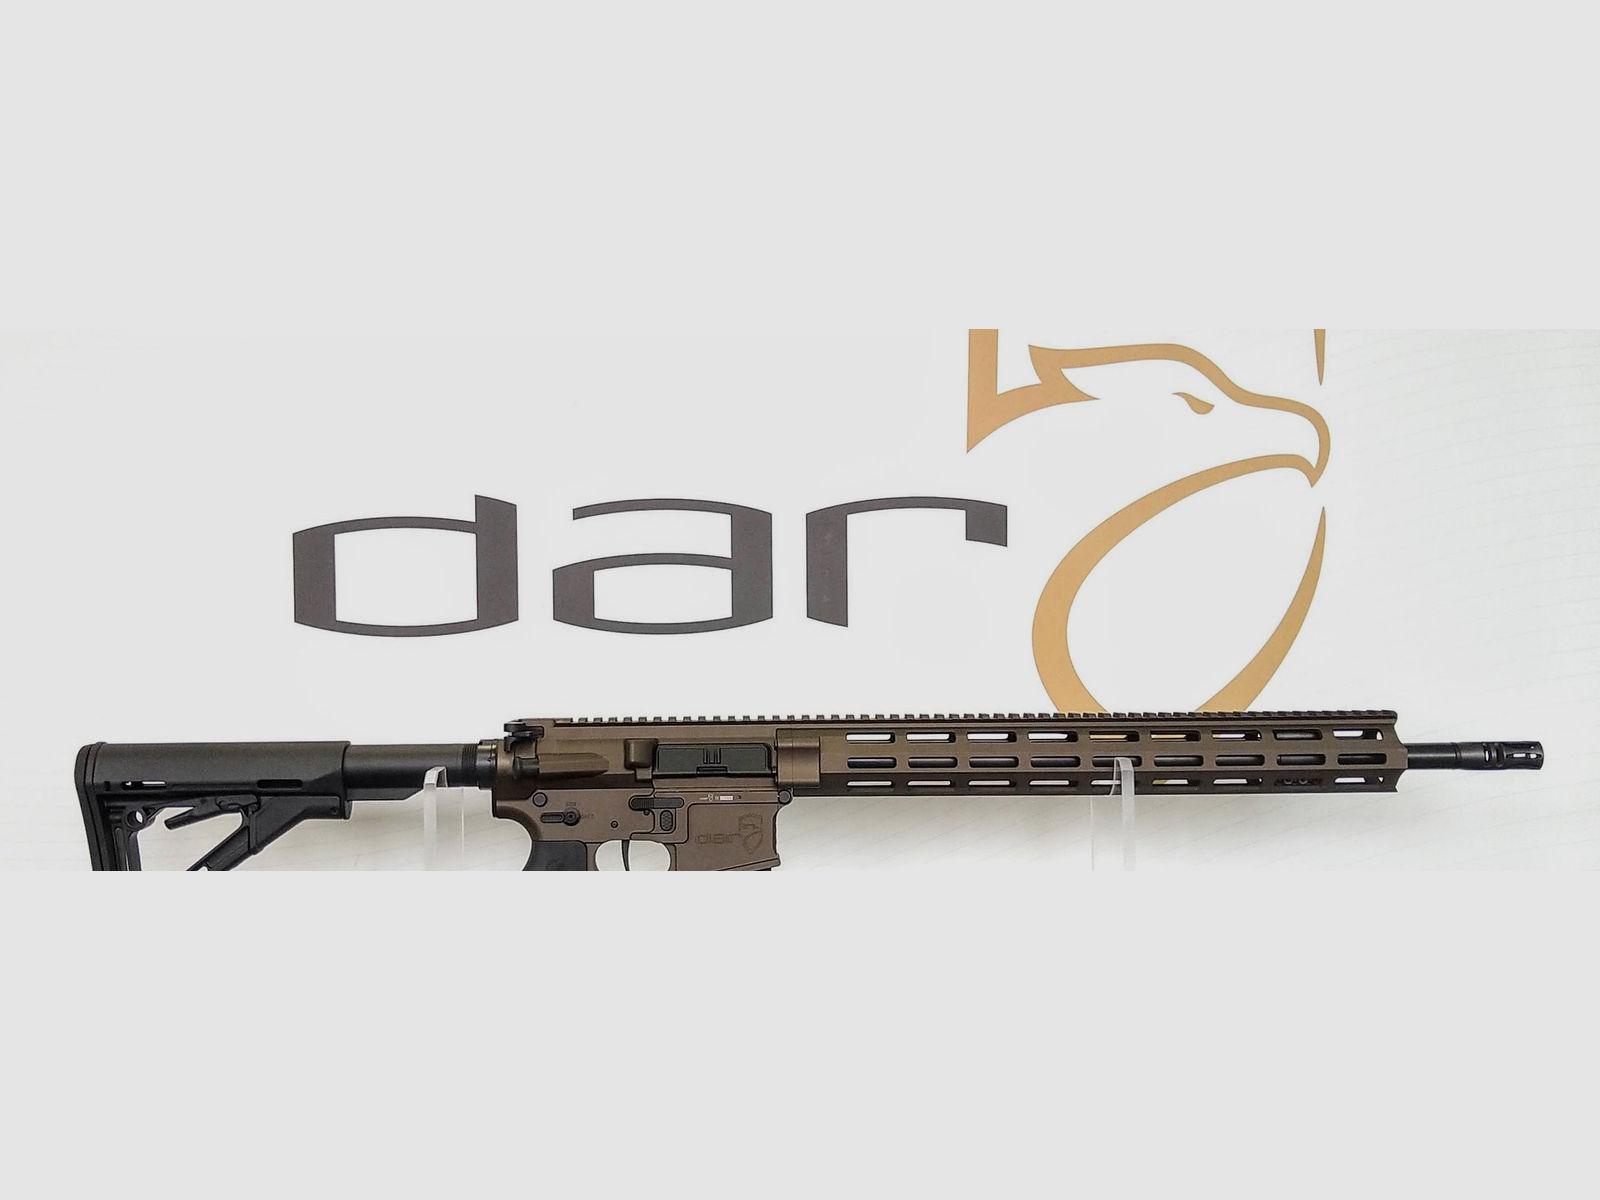 DAR-15 SPR - Midnight Bronze | AR15 - 18"